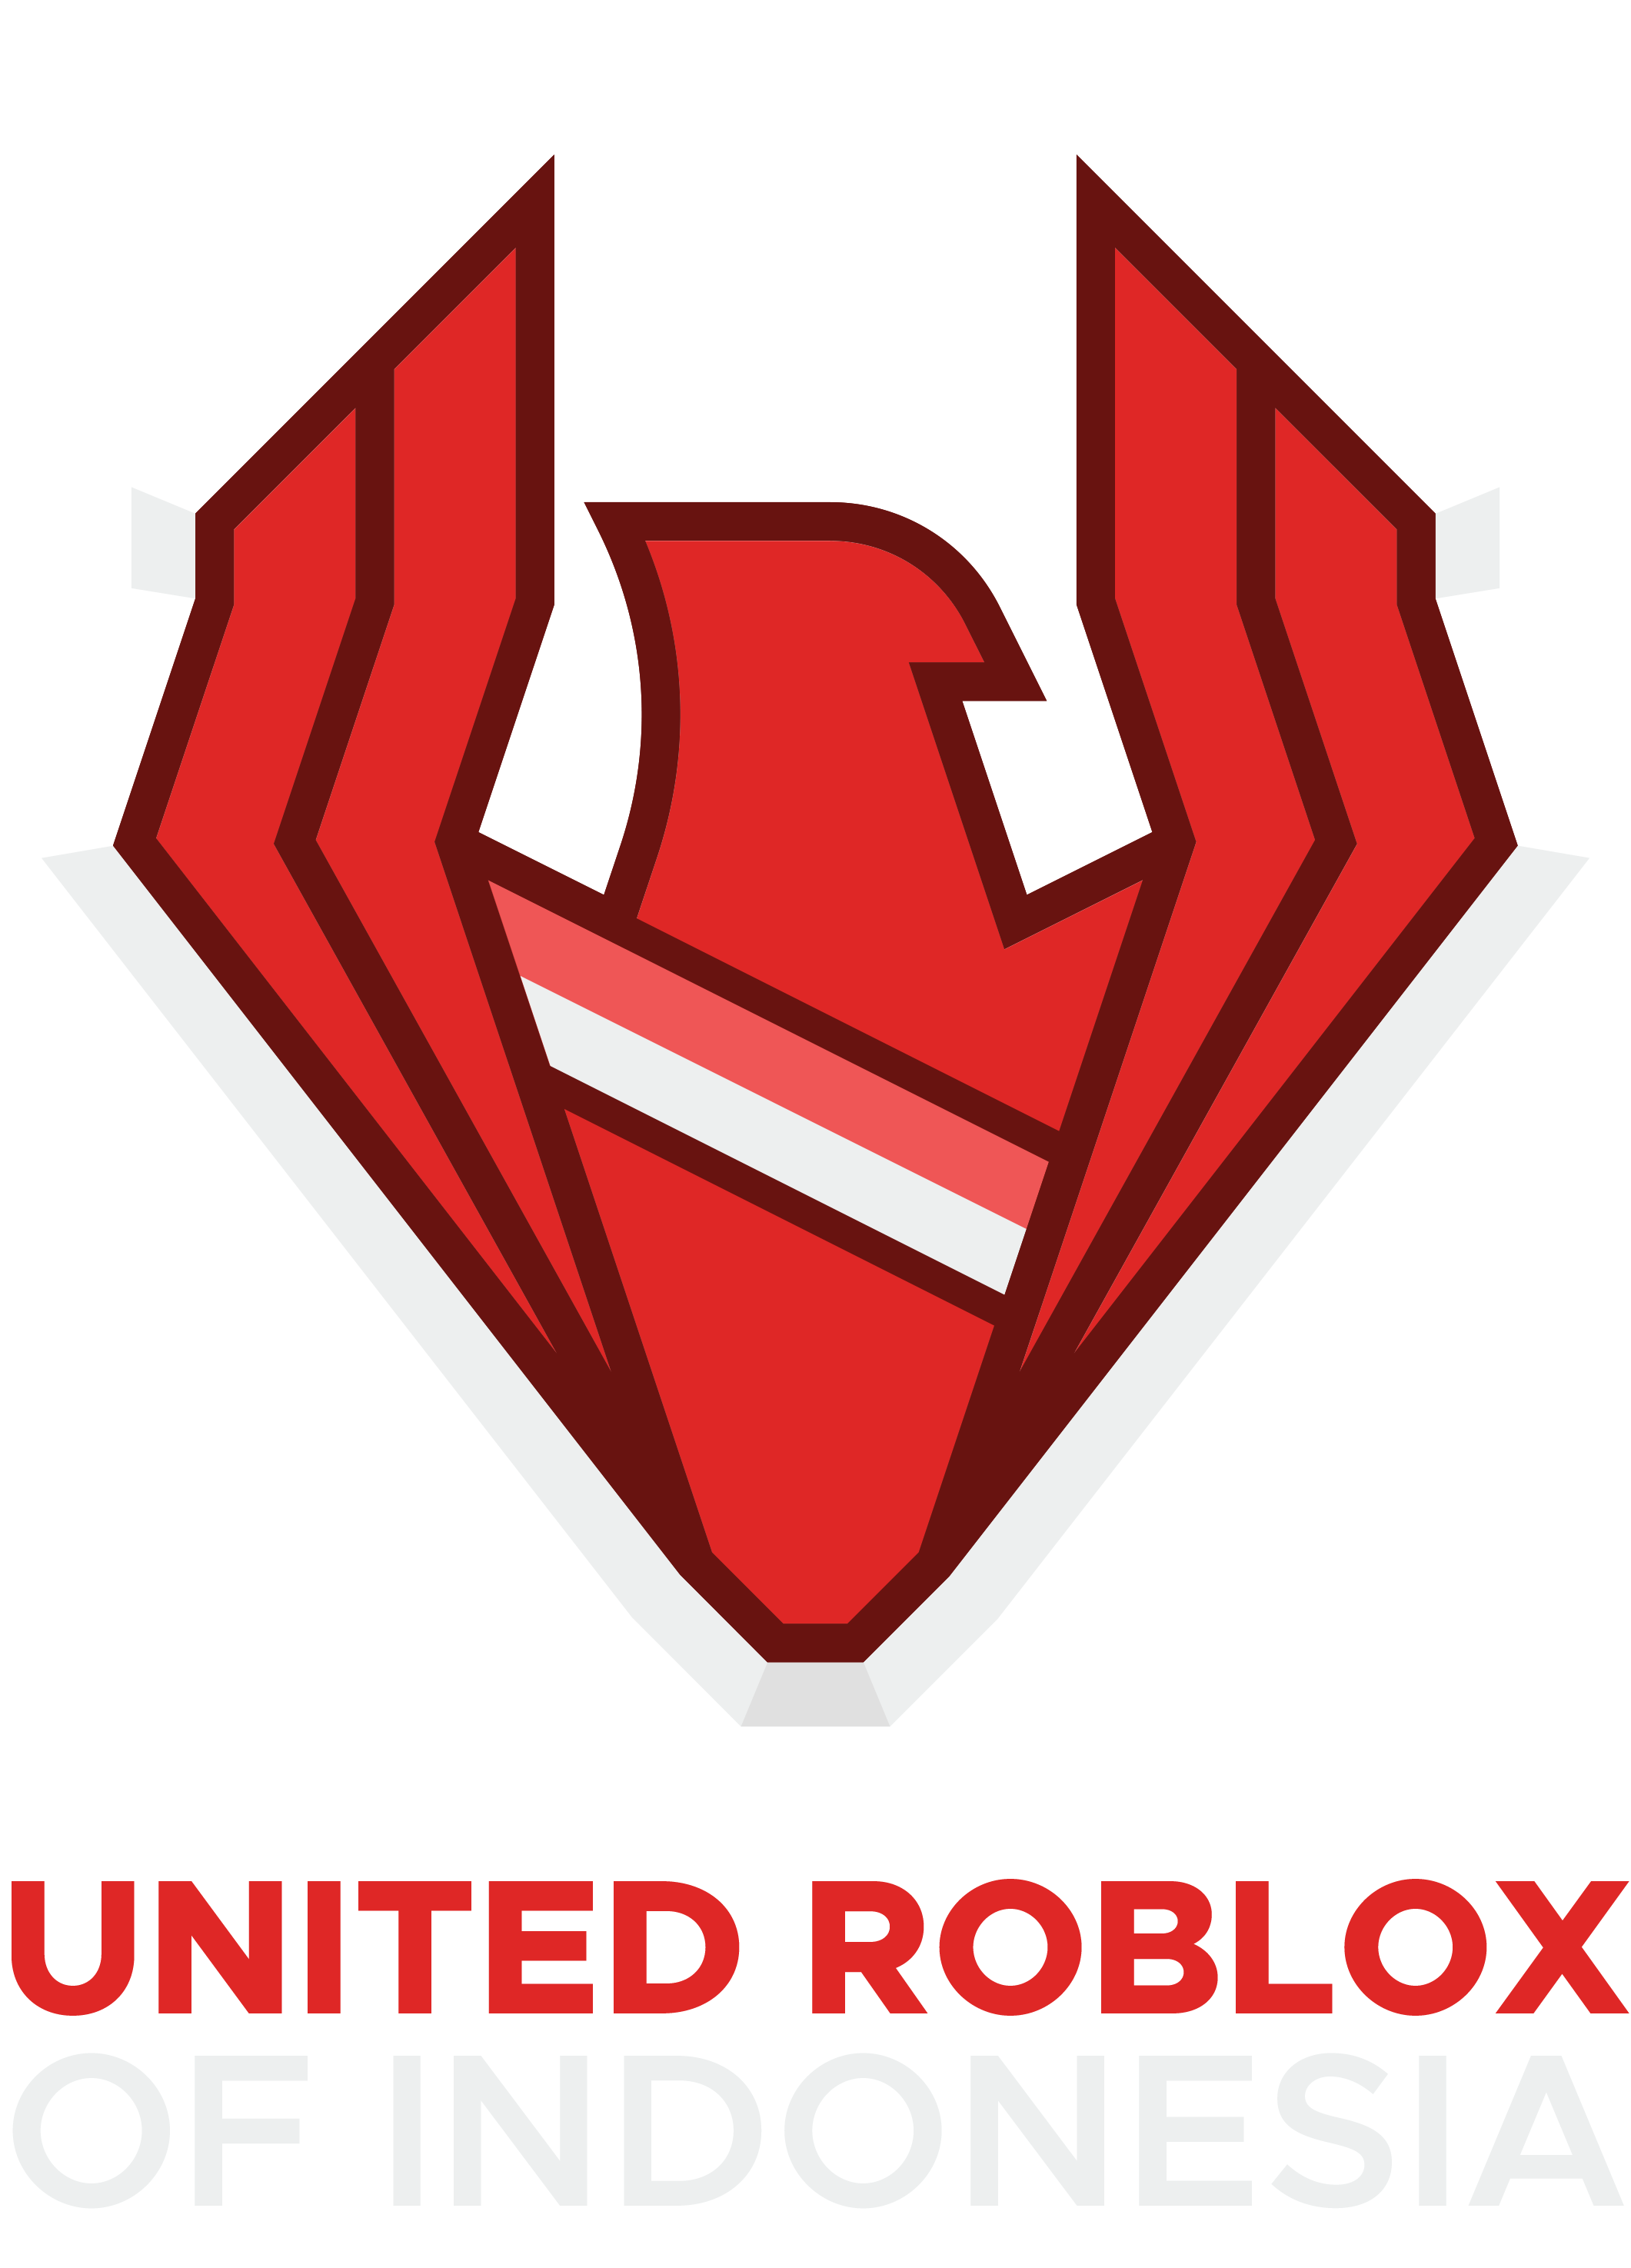 United Roblox Of Indonesia Roblox Wiki Fandom - gfx roblox game logo